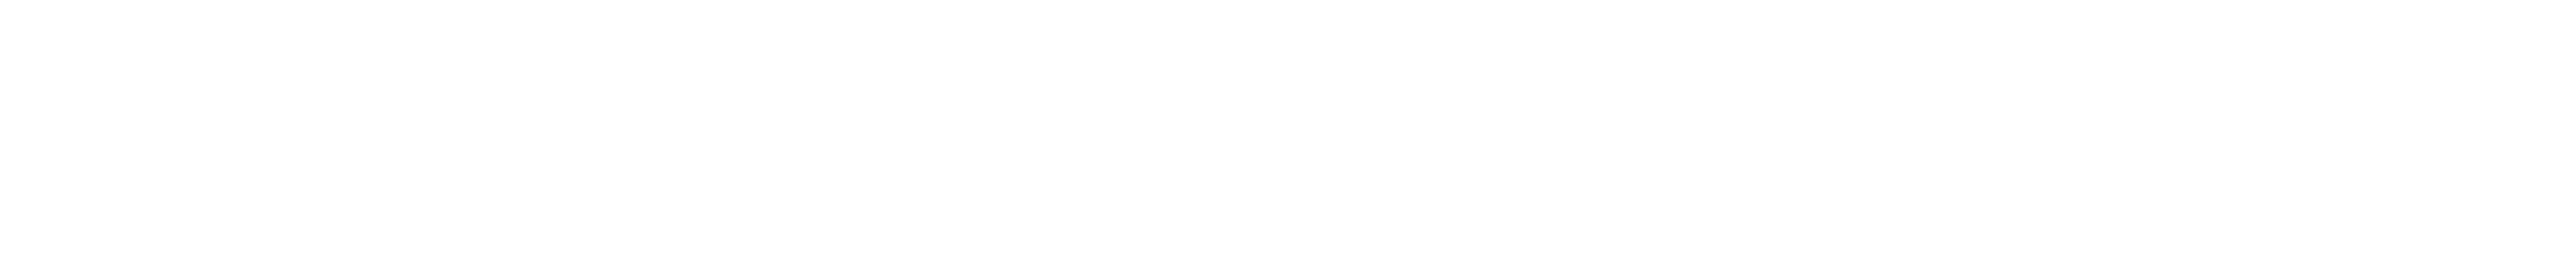 Samya Studios logo